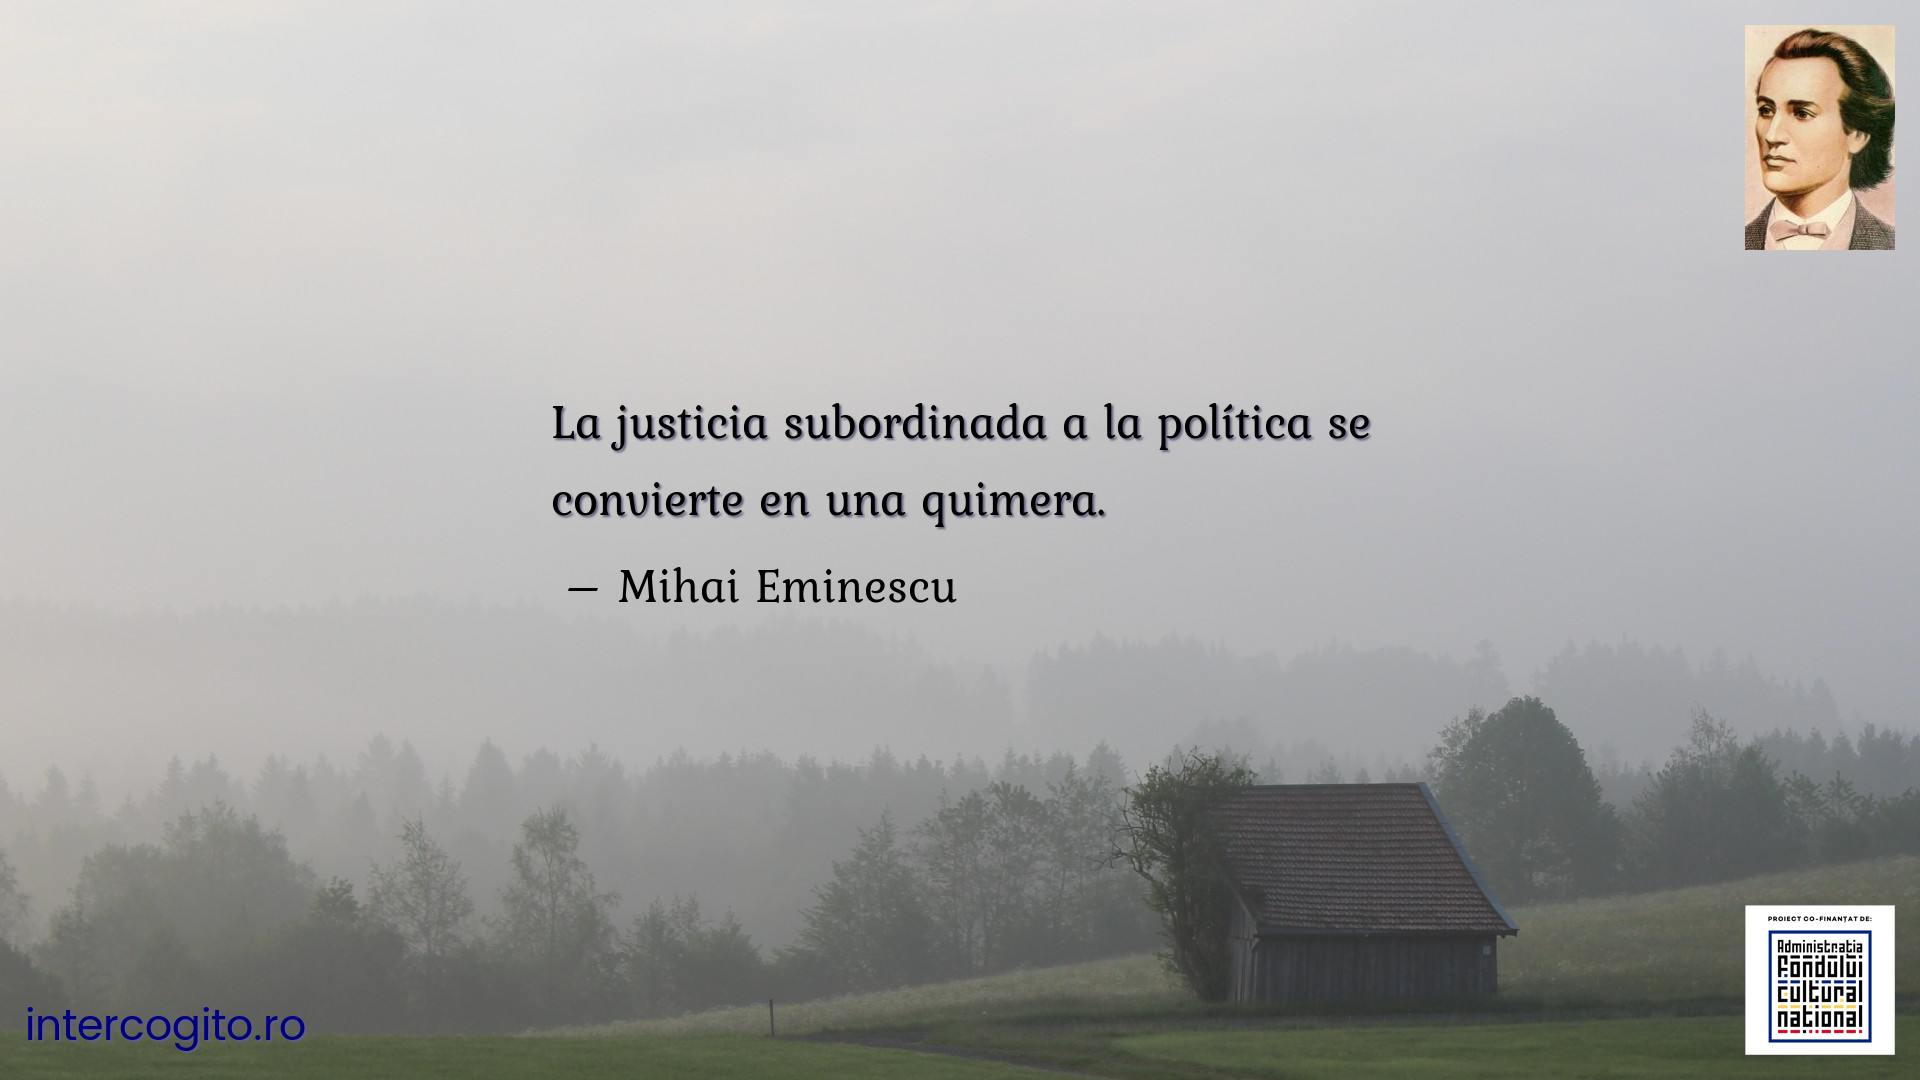 La justicia subordinada a la política se convierte en una quimera.